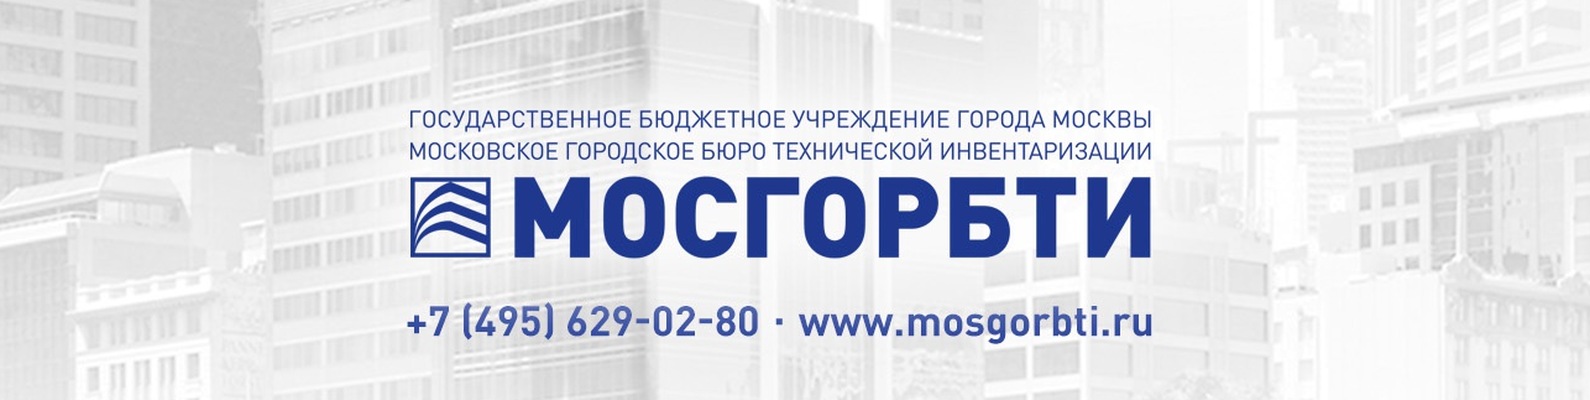 Официальный сайт ГБУ МосгорБТИ